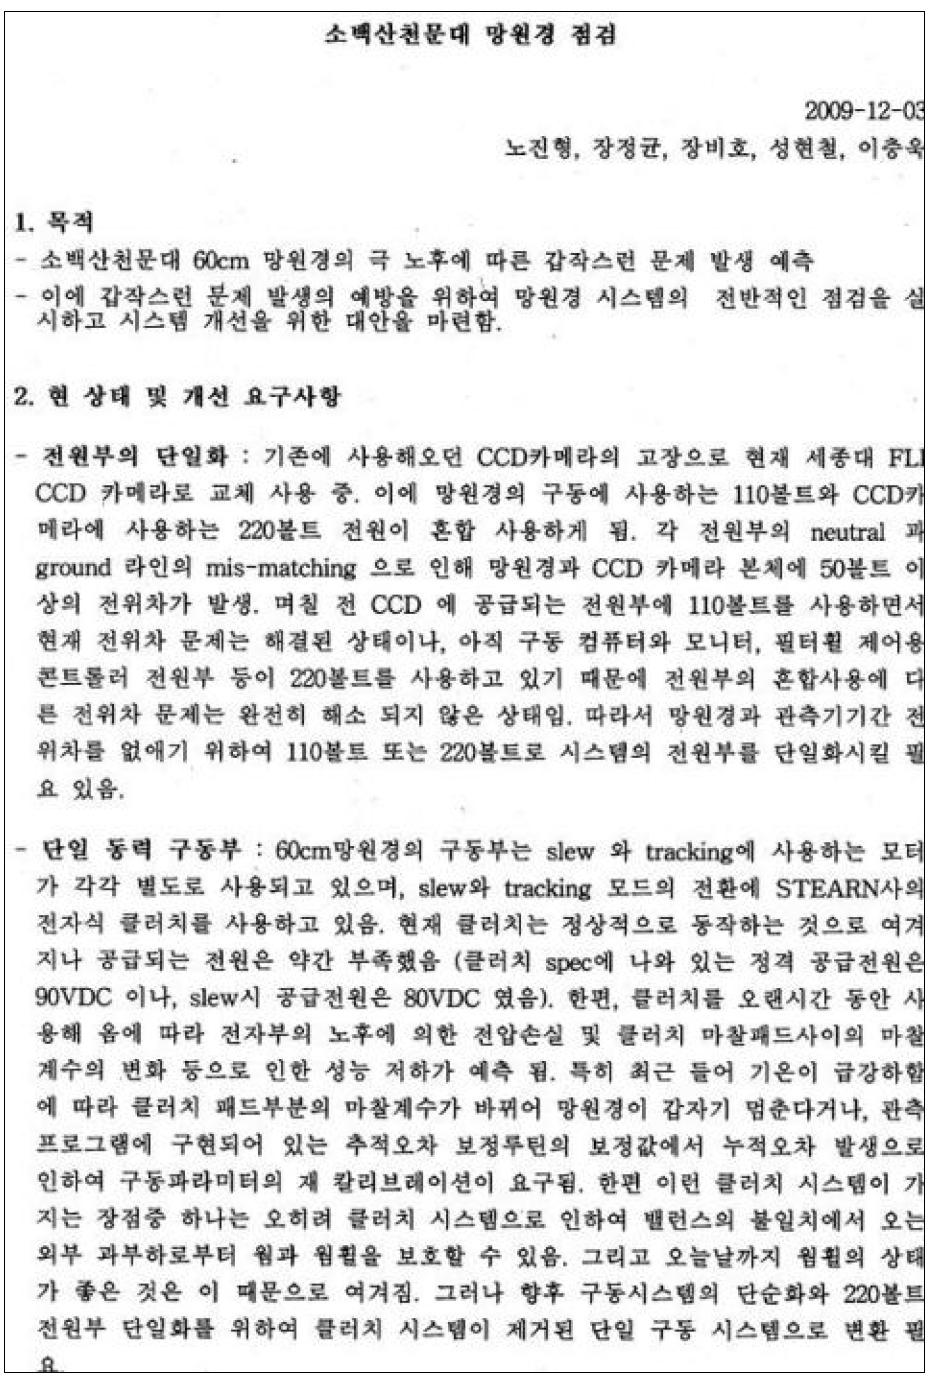 소백산천문대 61cm 광학망원경 점검 2009-12-03